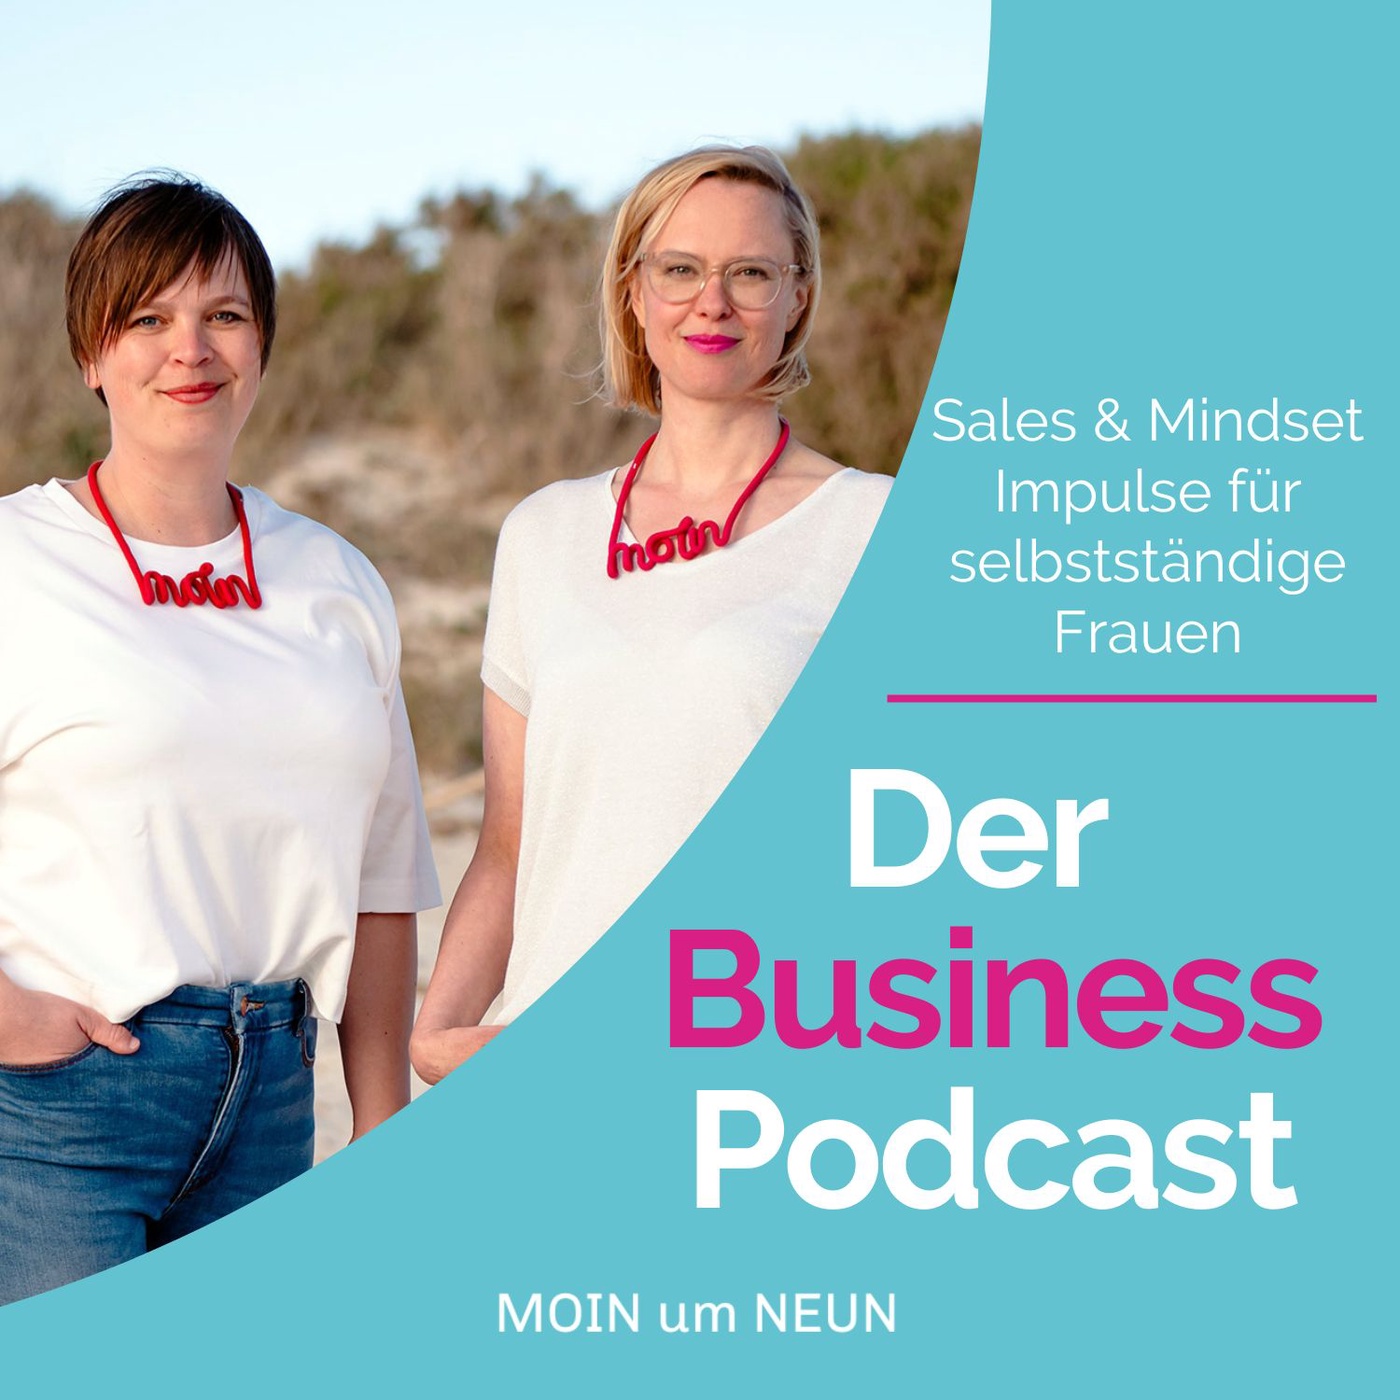 Der Business Podcast - Sales & Mindset Impulse für selbstständige Frauen